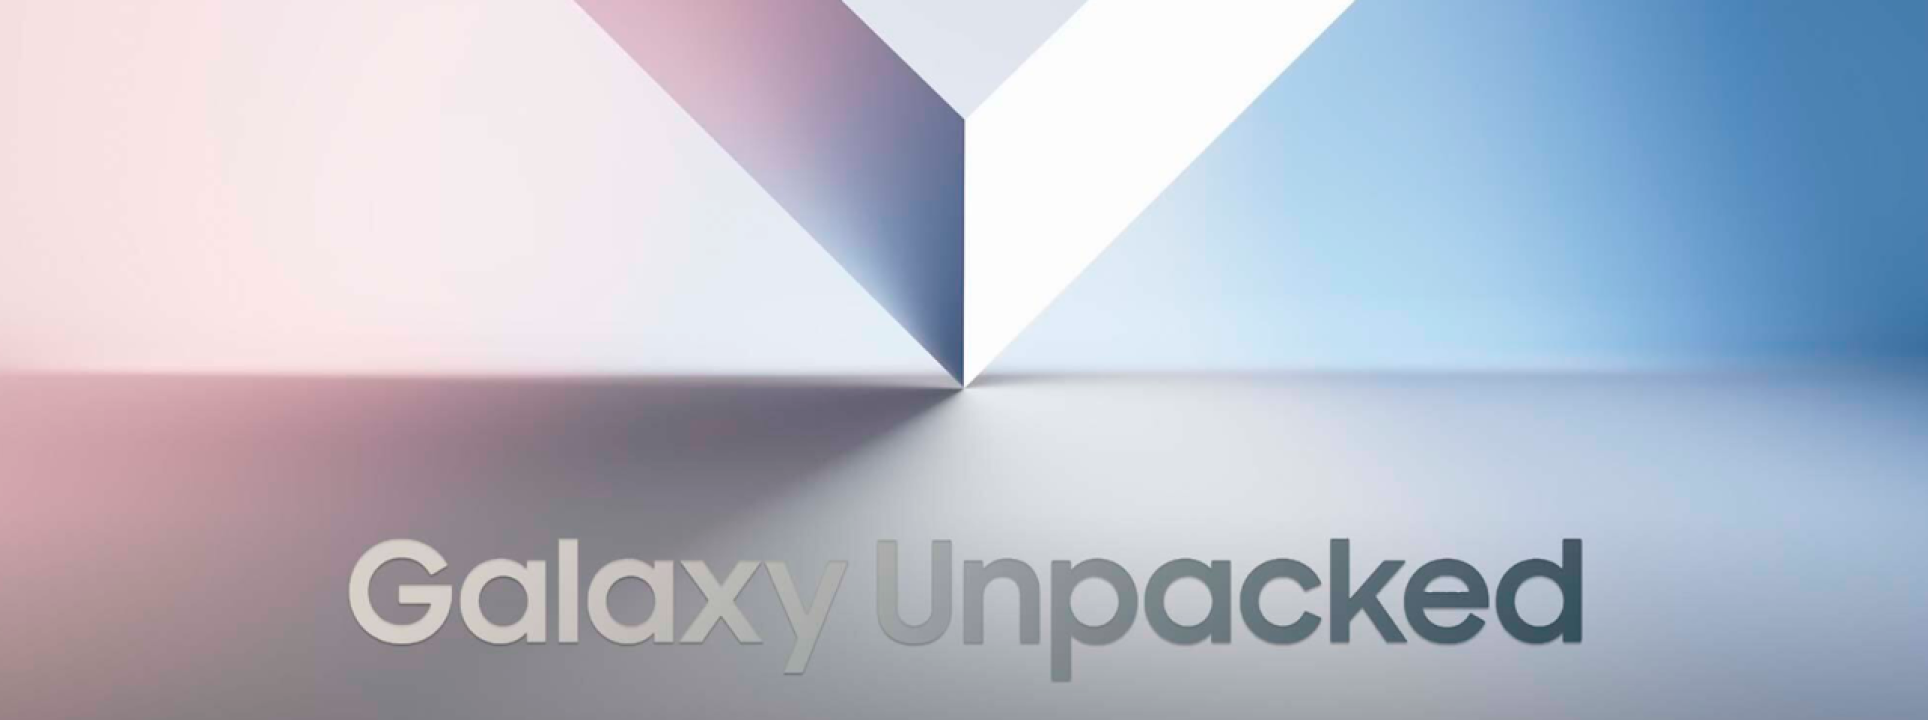 Galaxy Unpacked : découvrez les nouveautés de Samsung  blog post